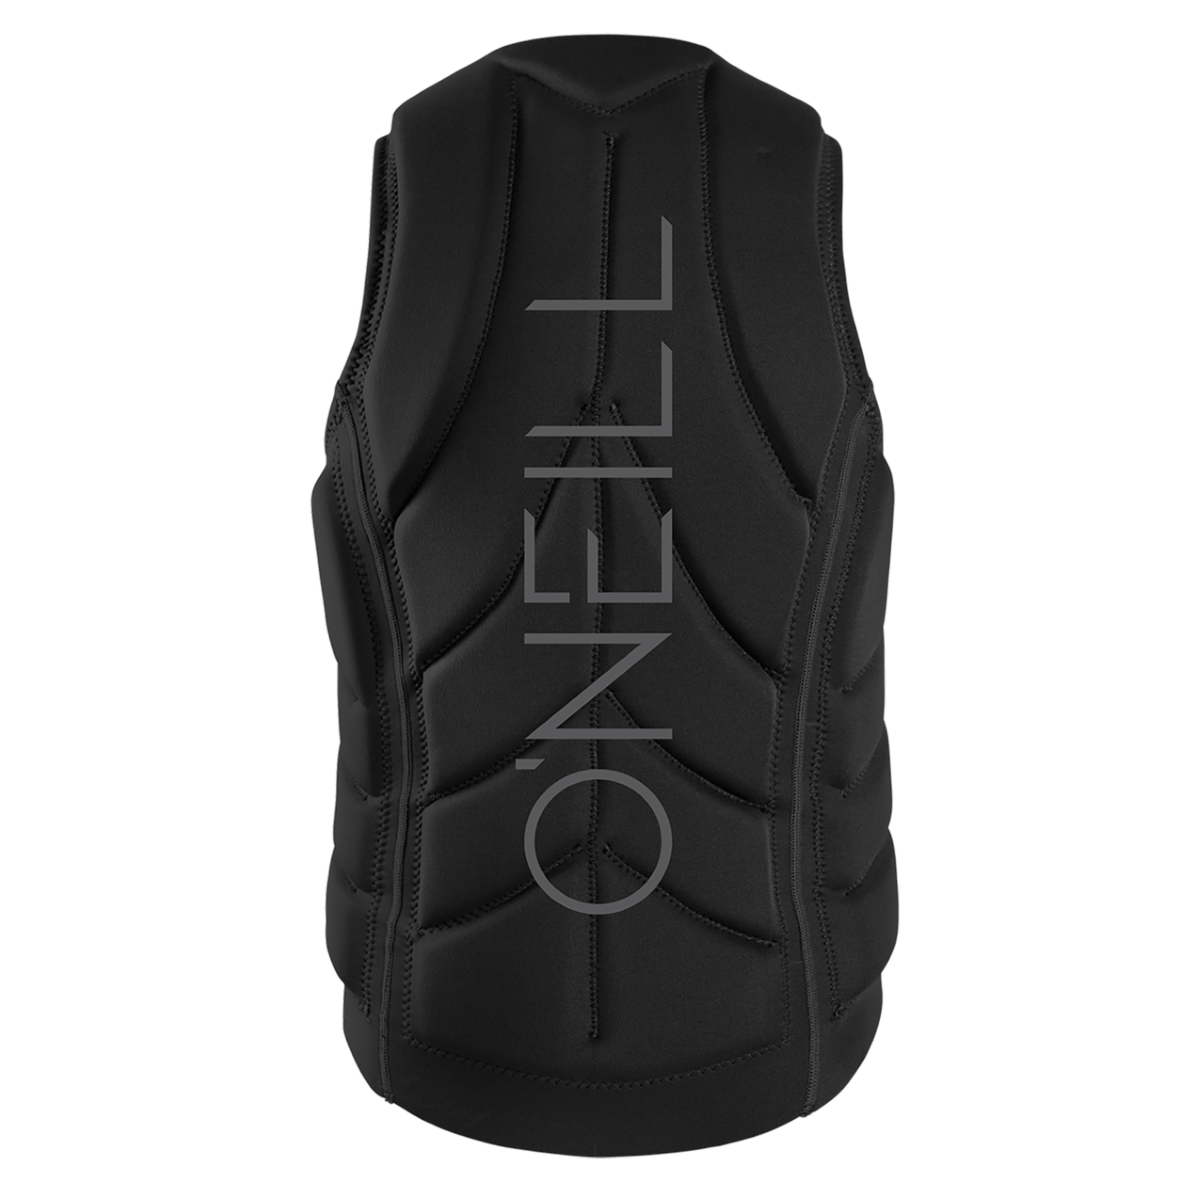 O'Neill Slasher Comp Vest in Black 2021 - BoardCo